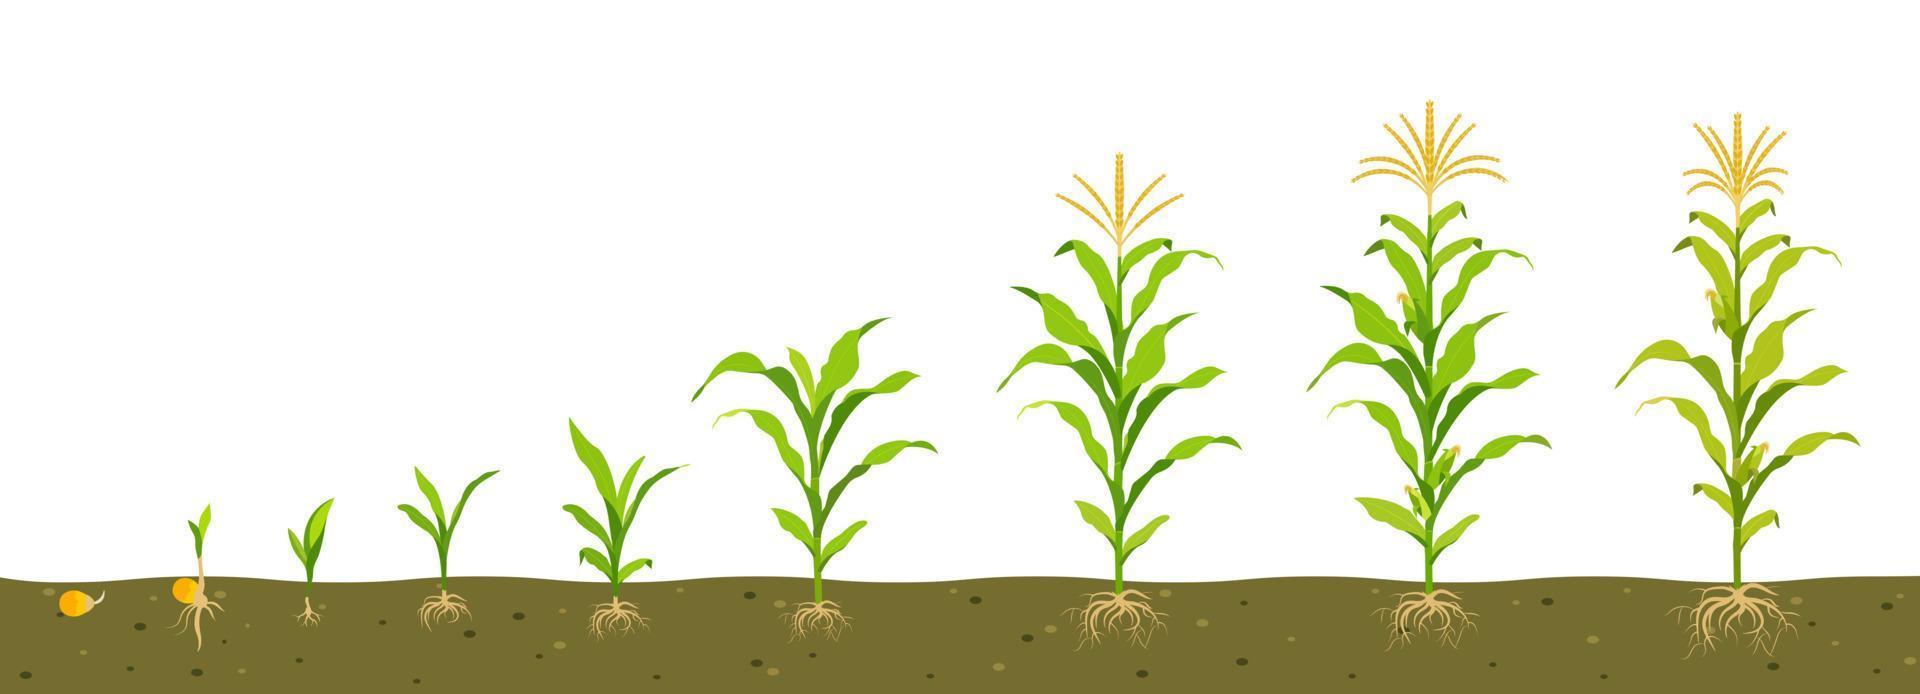 ciclo de crescimento do milho no solo. germinação de sementes, formação de raízes, brotos com folhas e fase de colheita. vetor